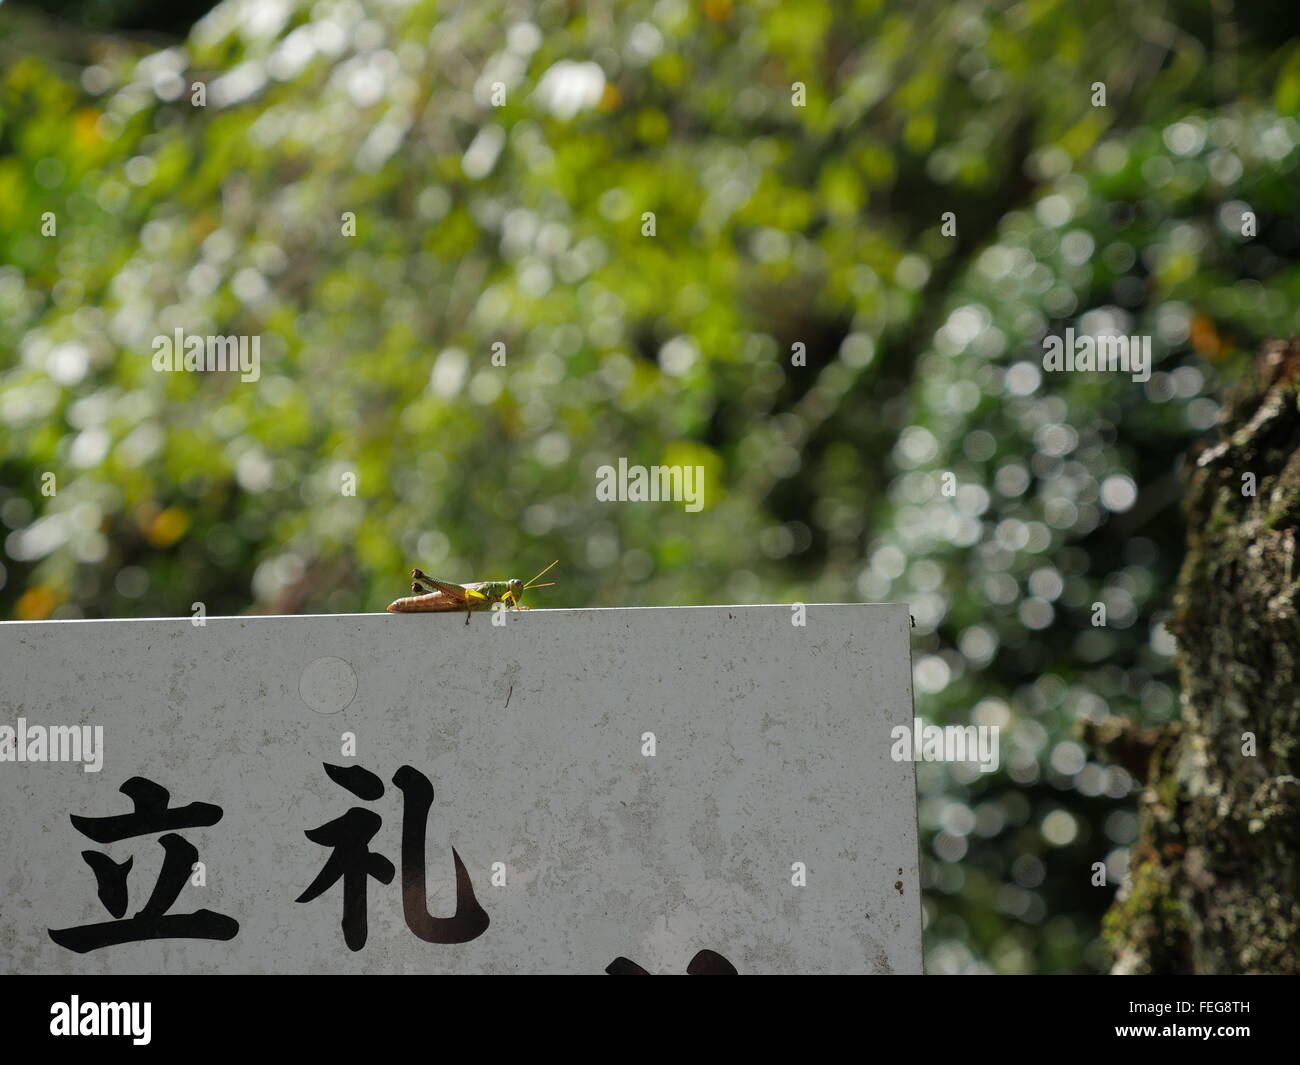 Eine Heuschrecke sitzt an der Wand gibt es japanische schreiben unten und am Rand eine kleine Ameise klettert. Stockfoto